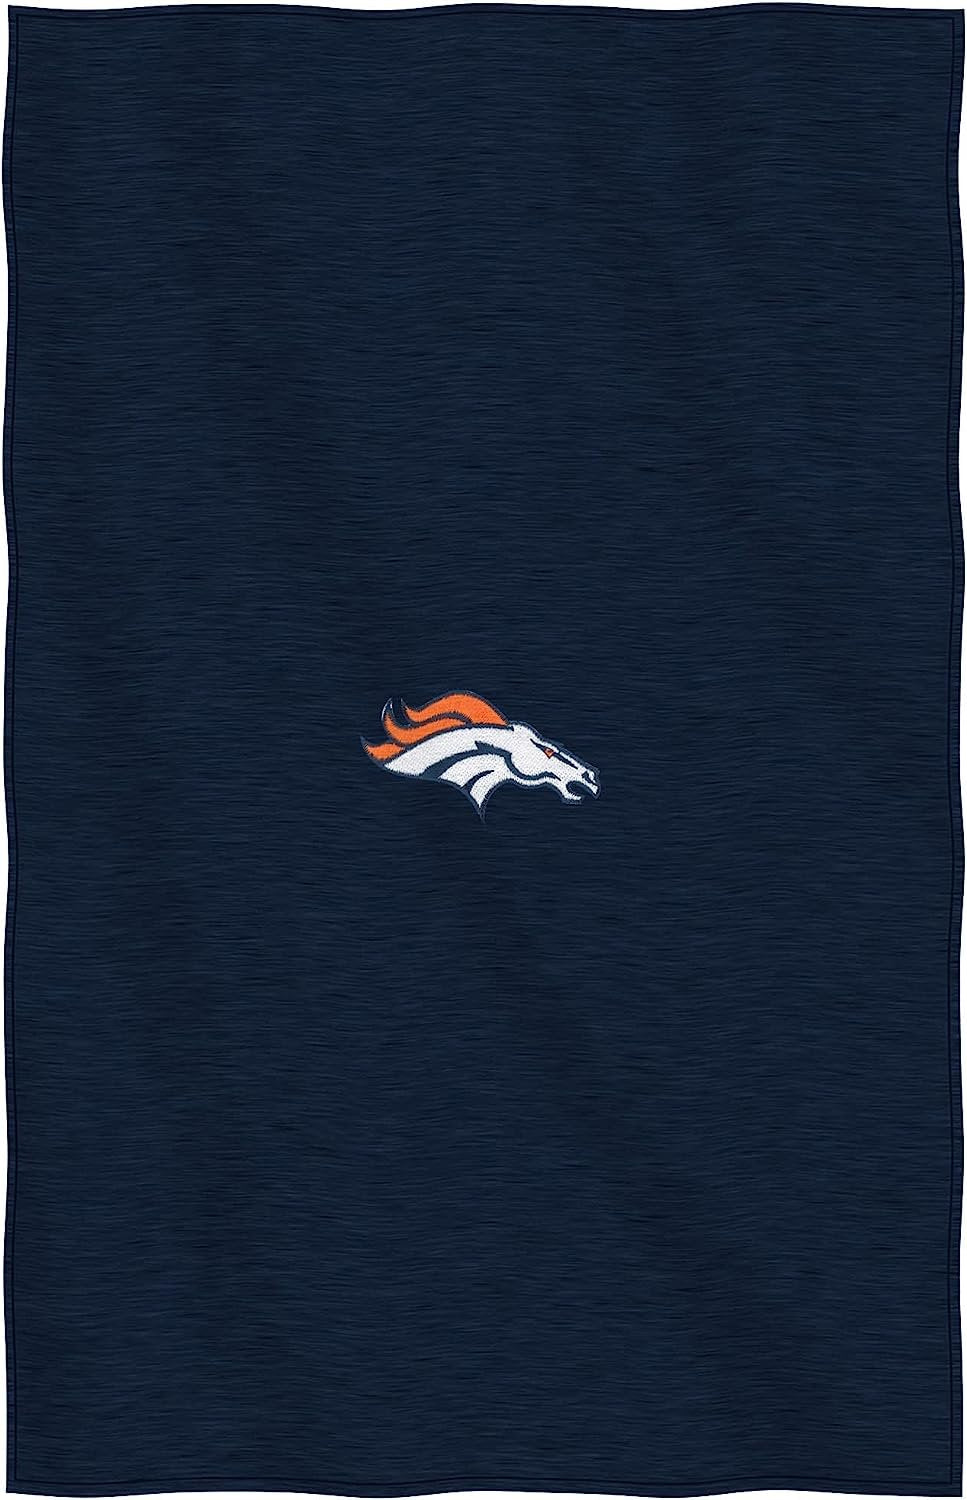 Denver Broncos Throw Blanket, Sweatshirt Design, Embroidered Logo, Dominate Style, 54x84 Inch